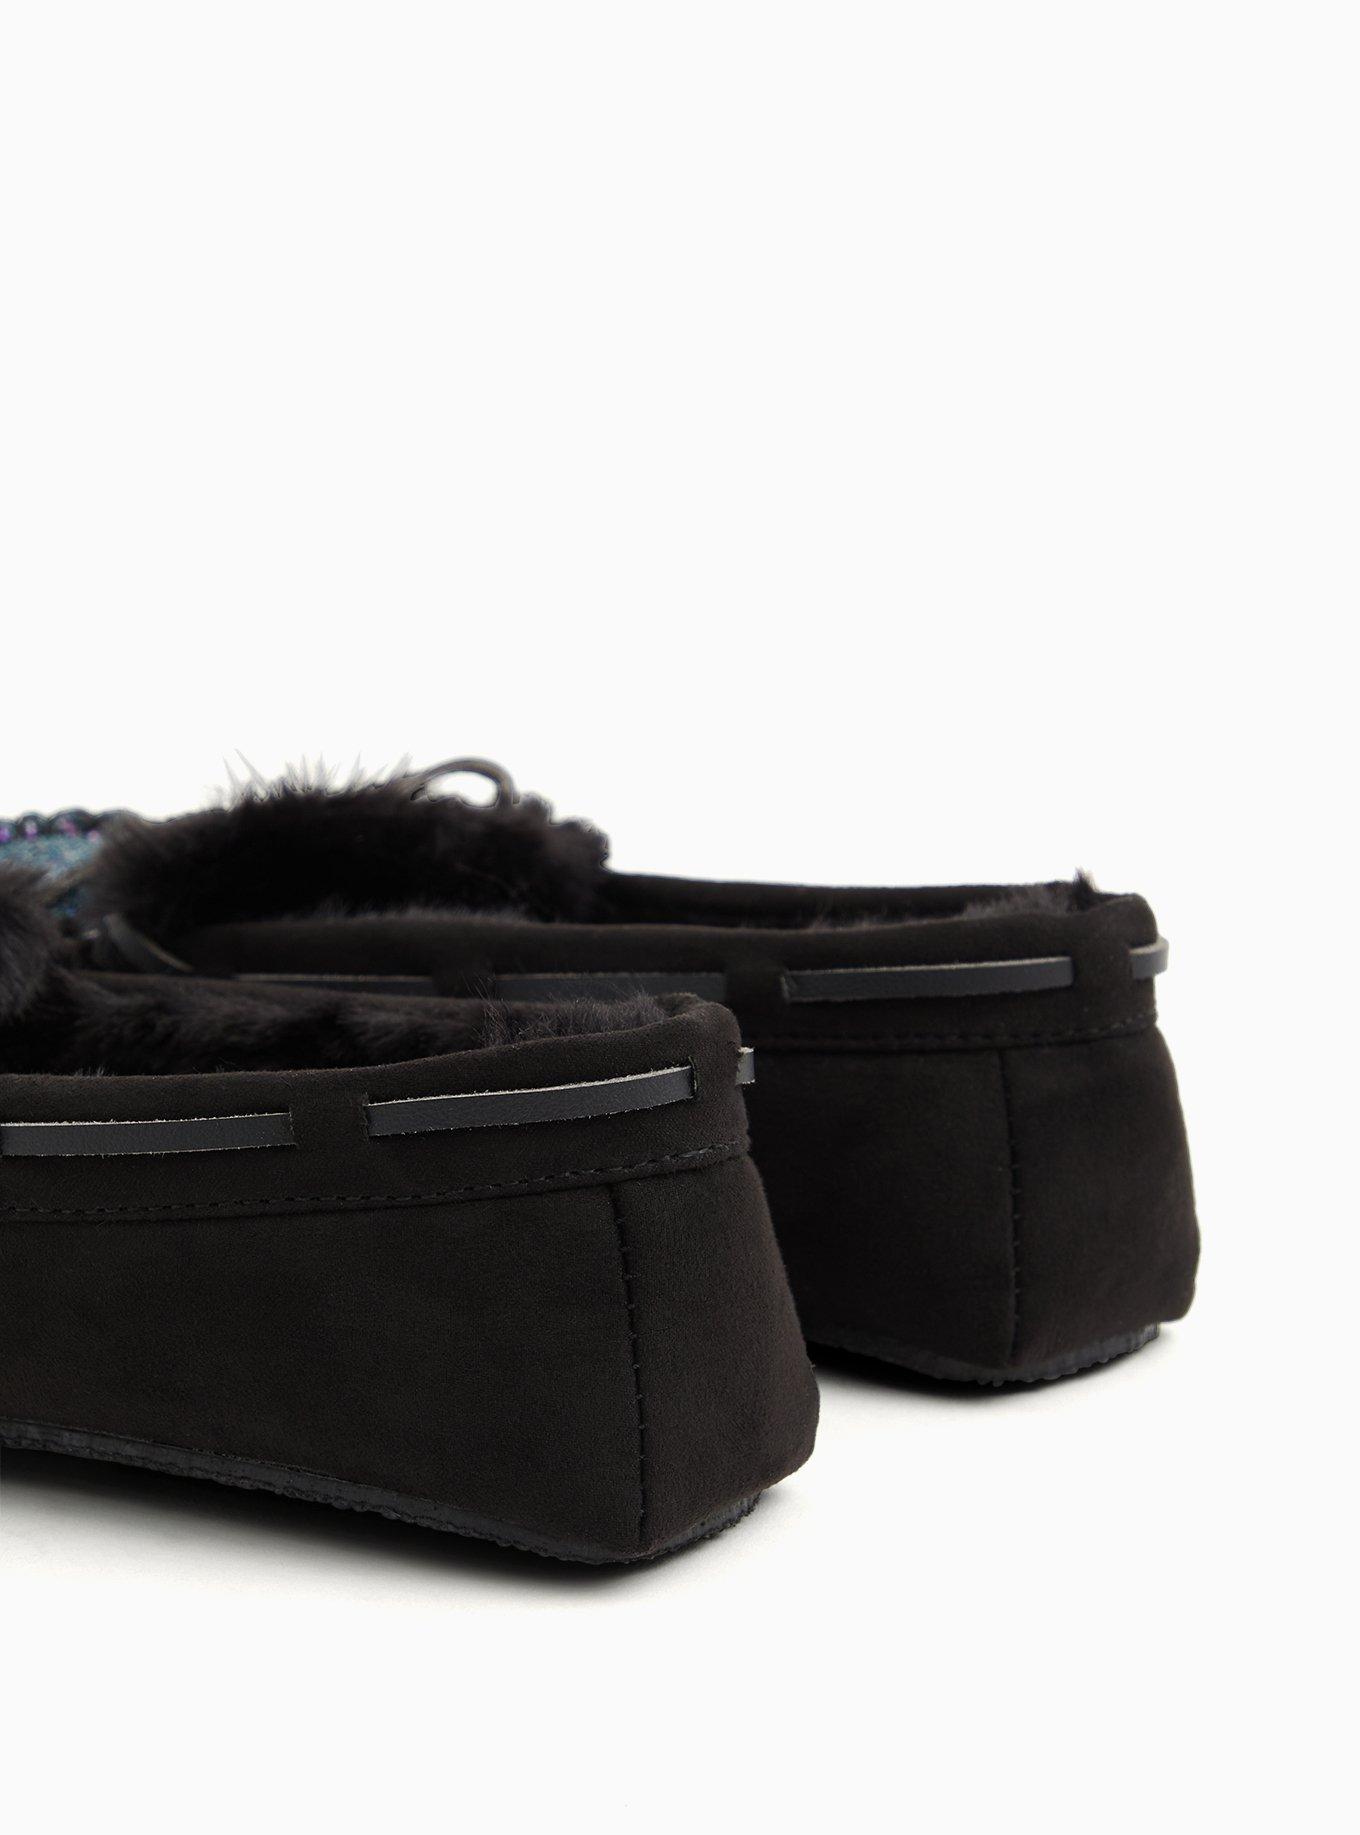 Plus Size - Black Faux Fur Slide (Wide Width) - Torrid